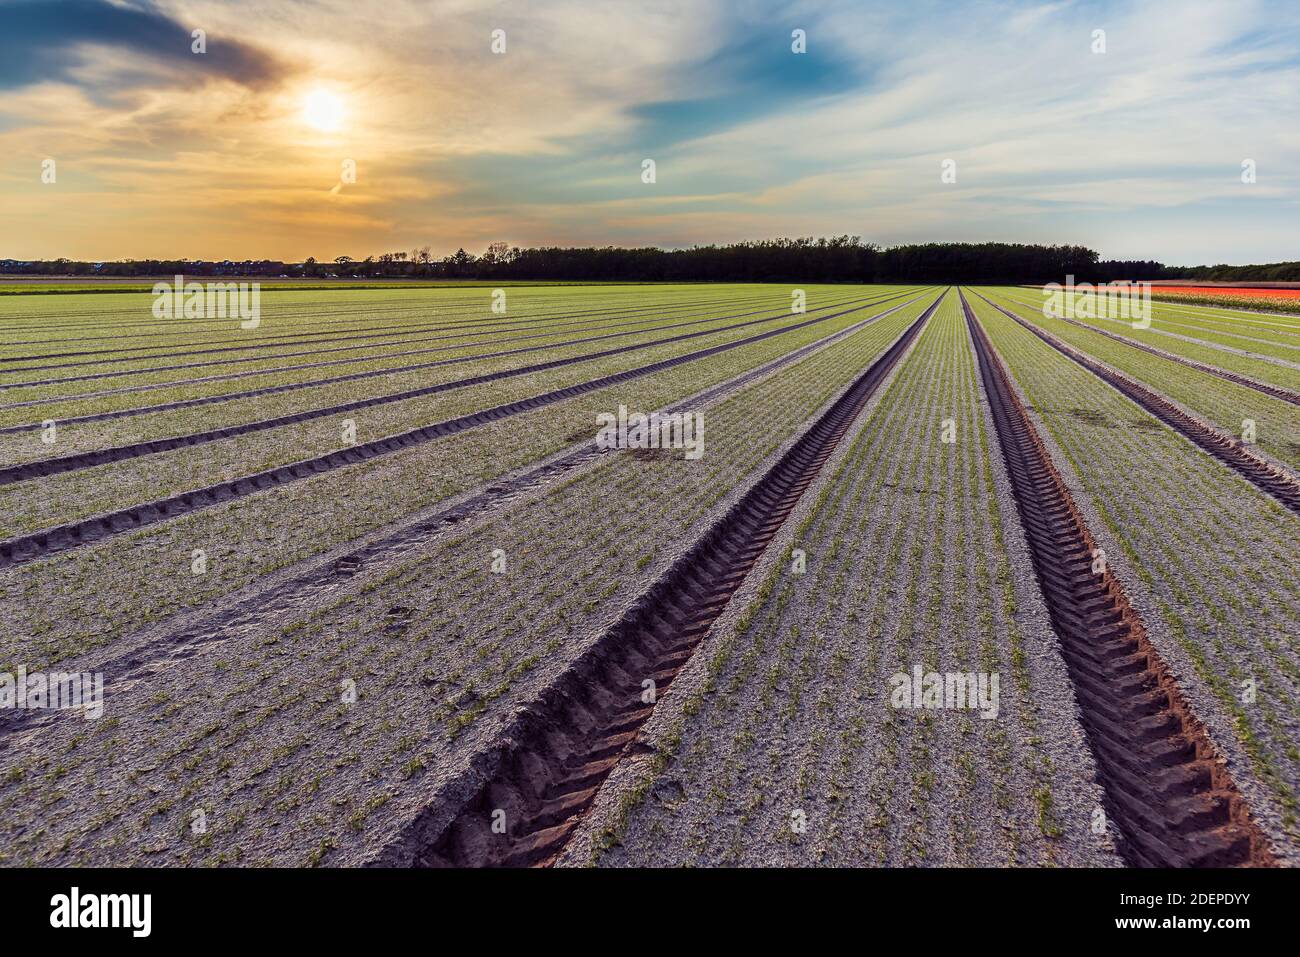 El tractor sigue en el campo donde las plantas están comenzando crecer muestra las líneas perfectas dibujadas con precisión moderna agricultura Foto de stock